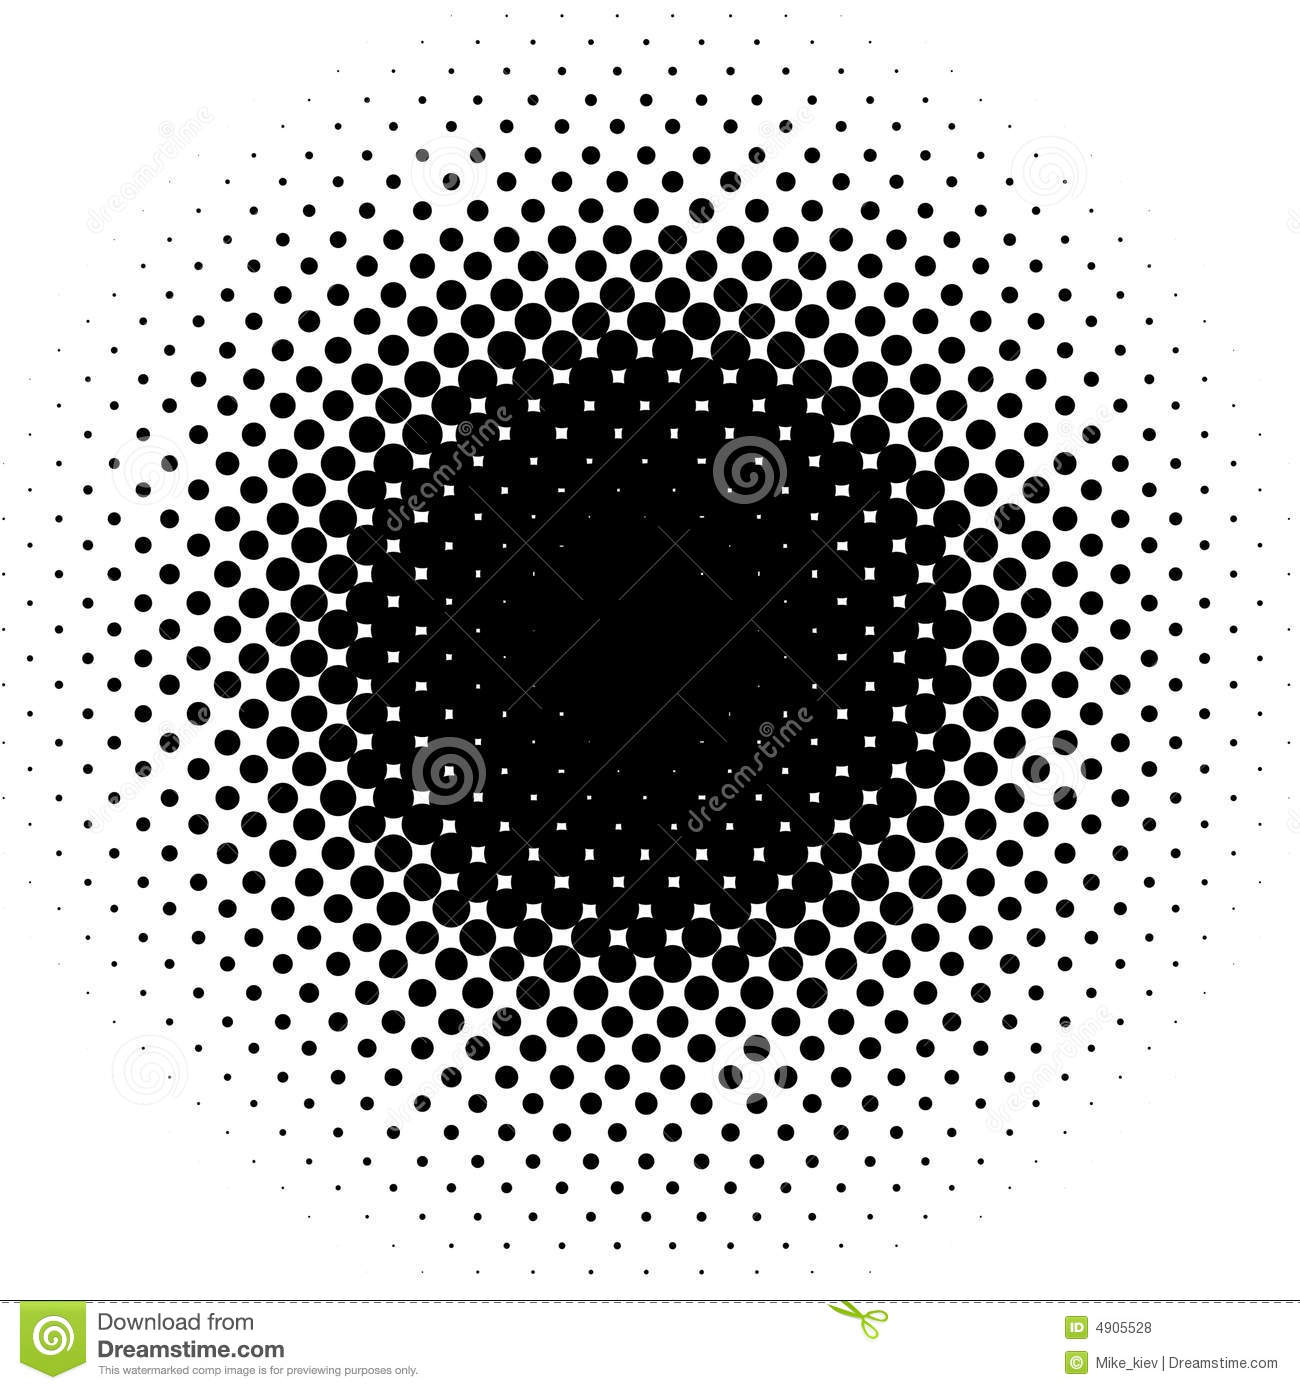 Free Vector Dot Circle Patterns